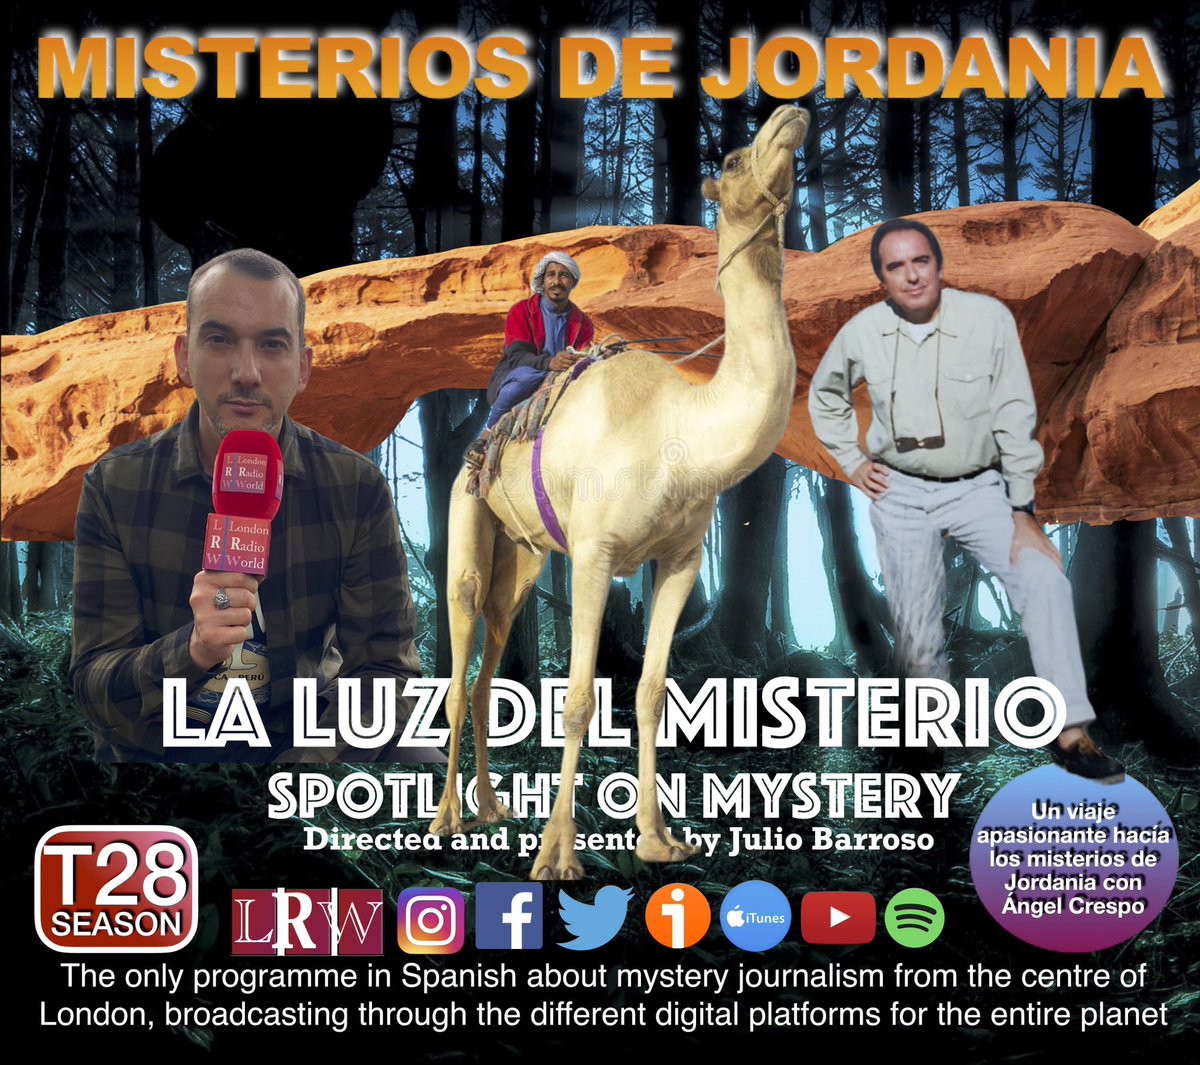 From London Temporada 28:

Misterios de Jordania con Ángel Crespo

#angelcrespo #petra #misteriosjordania #ummo

go.ivoox.com/rf/96650136